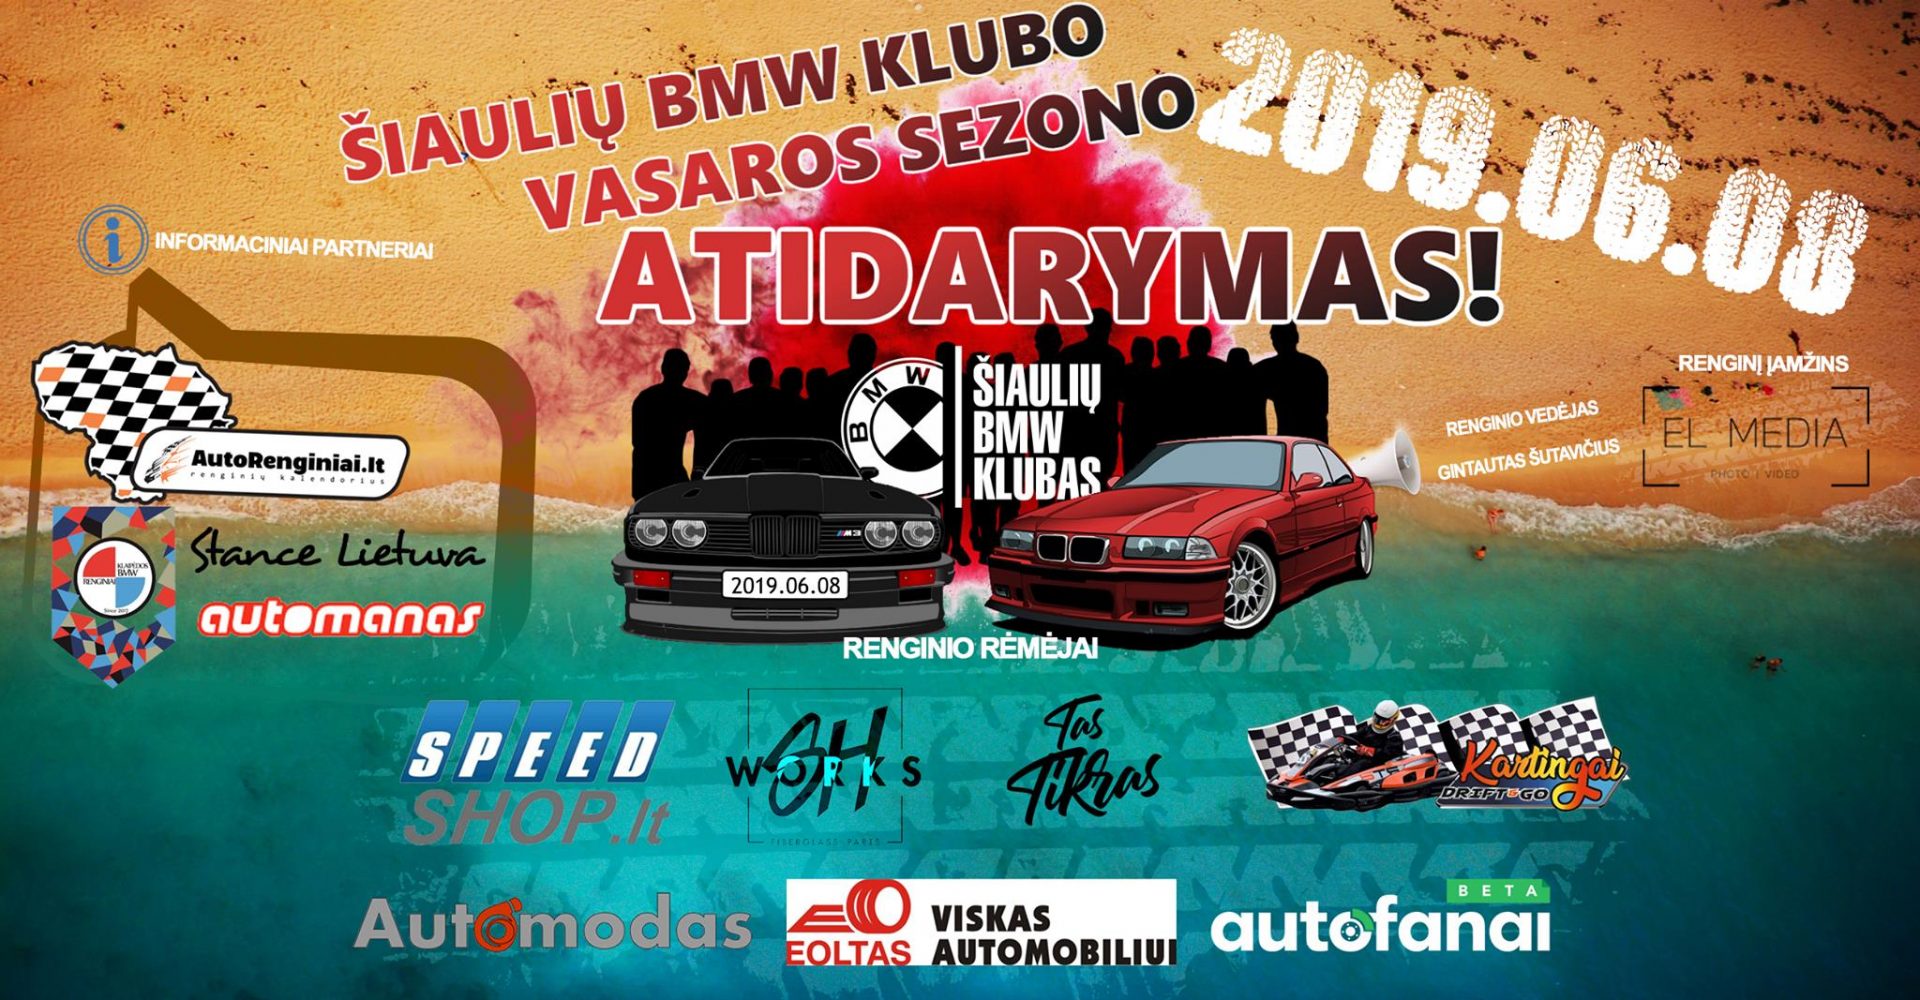 Šiaulių BMW Klubo vasaros sezono ATIDARYMAS